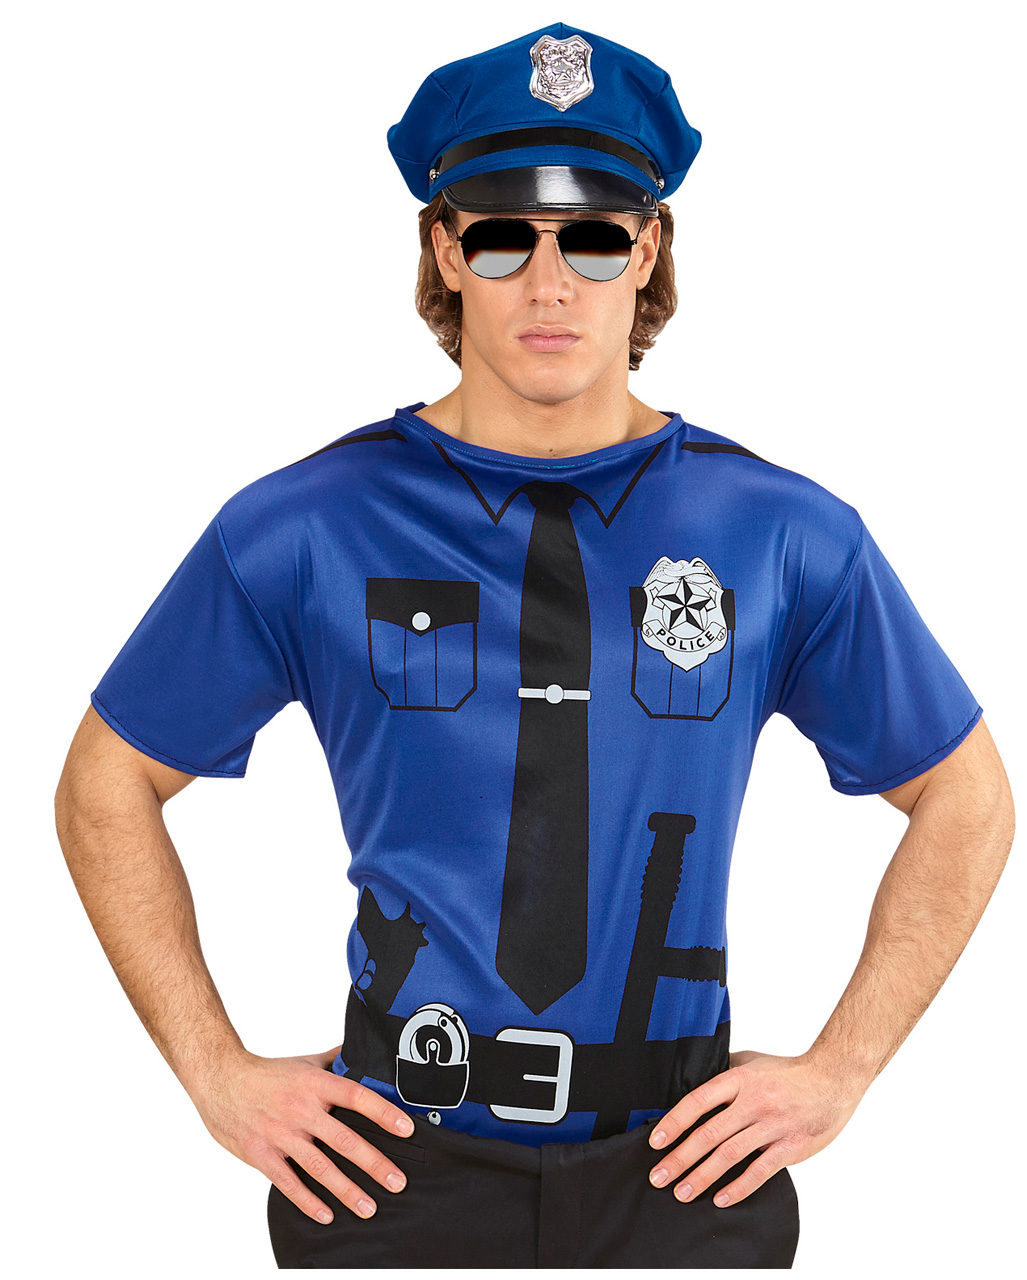 Polizei Uniform Kostüm Polizist XL Polizeiuniform US Cop Polizisten Verkleidung 